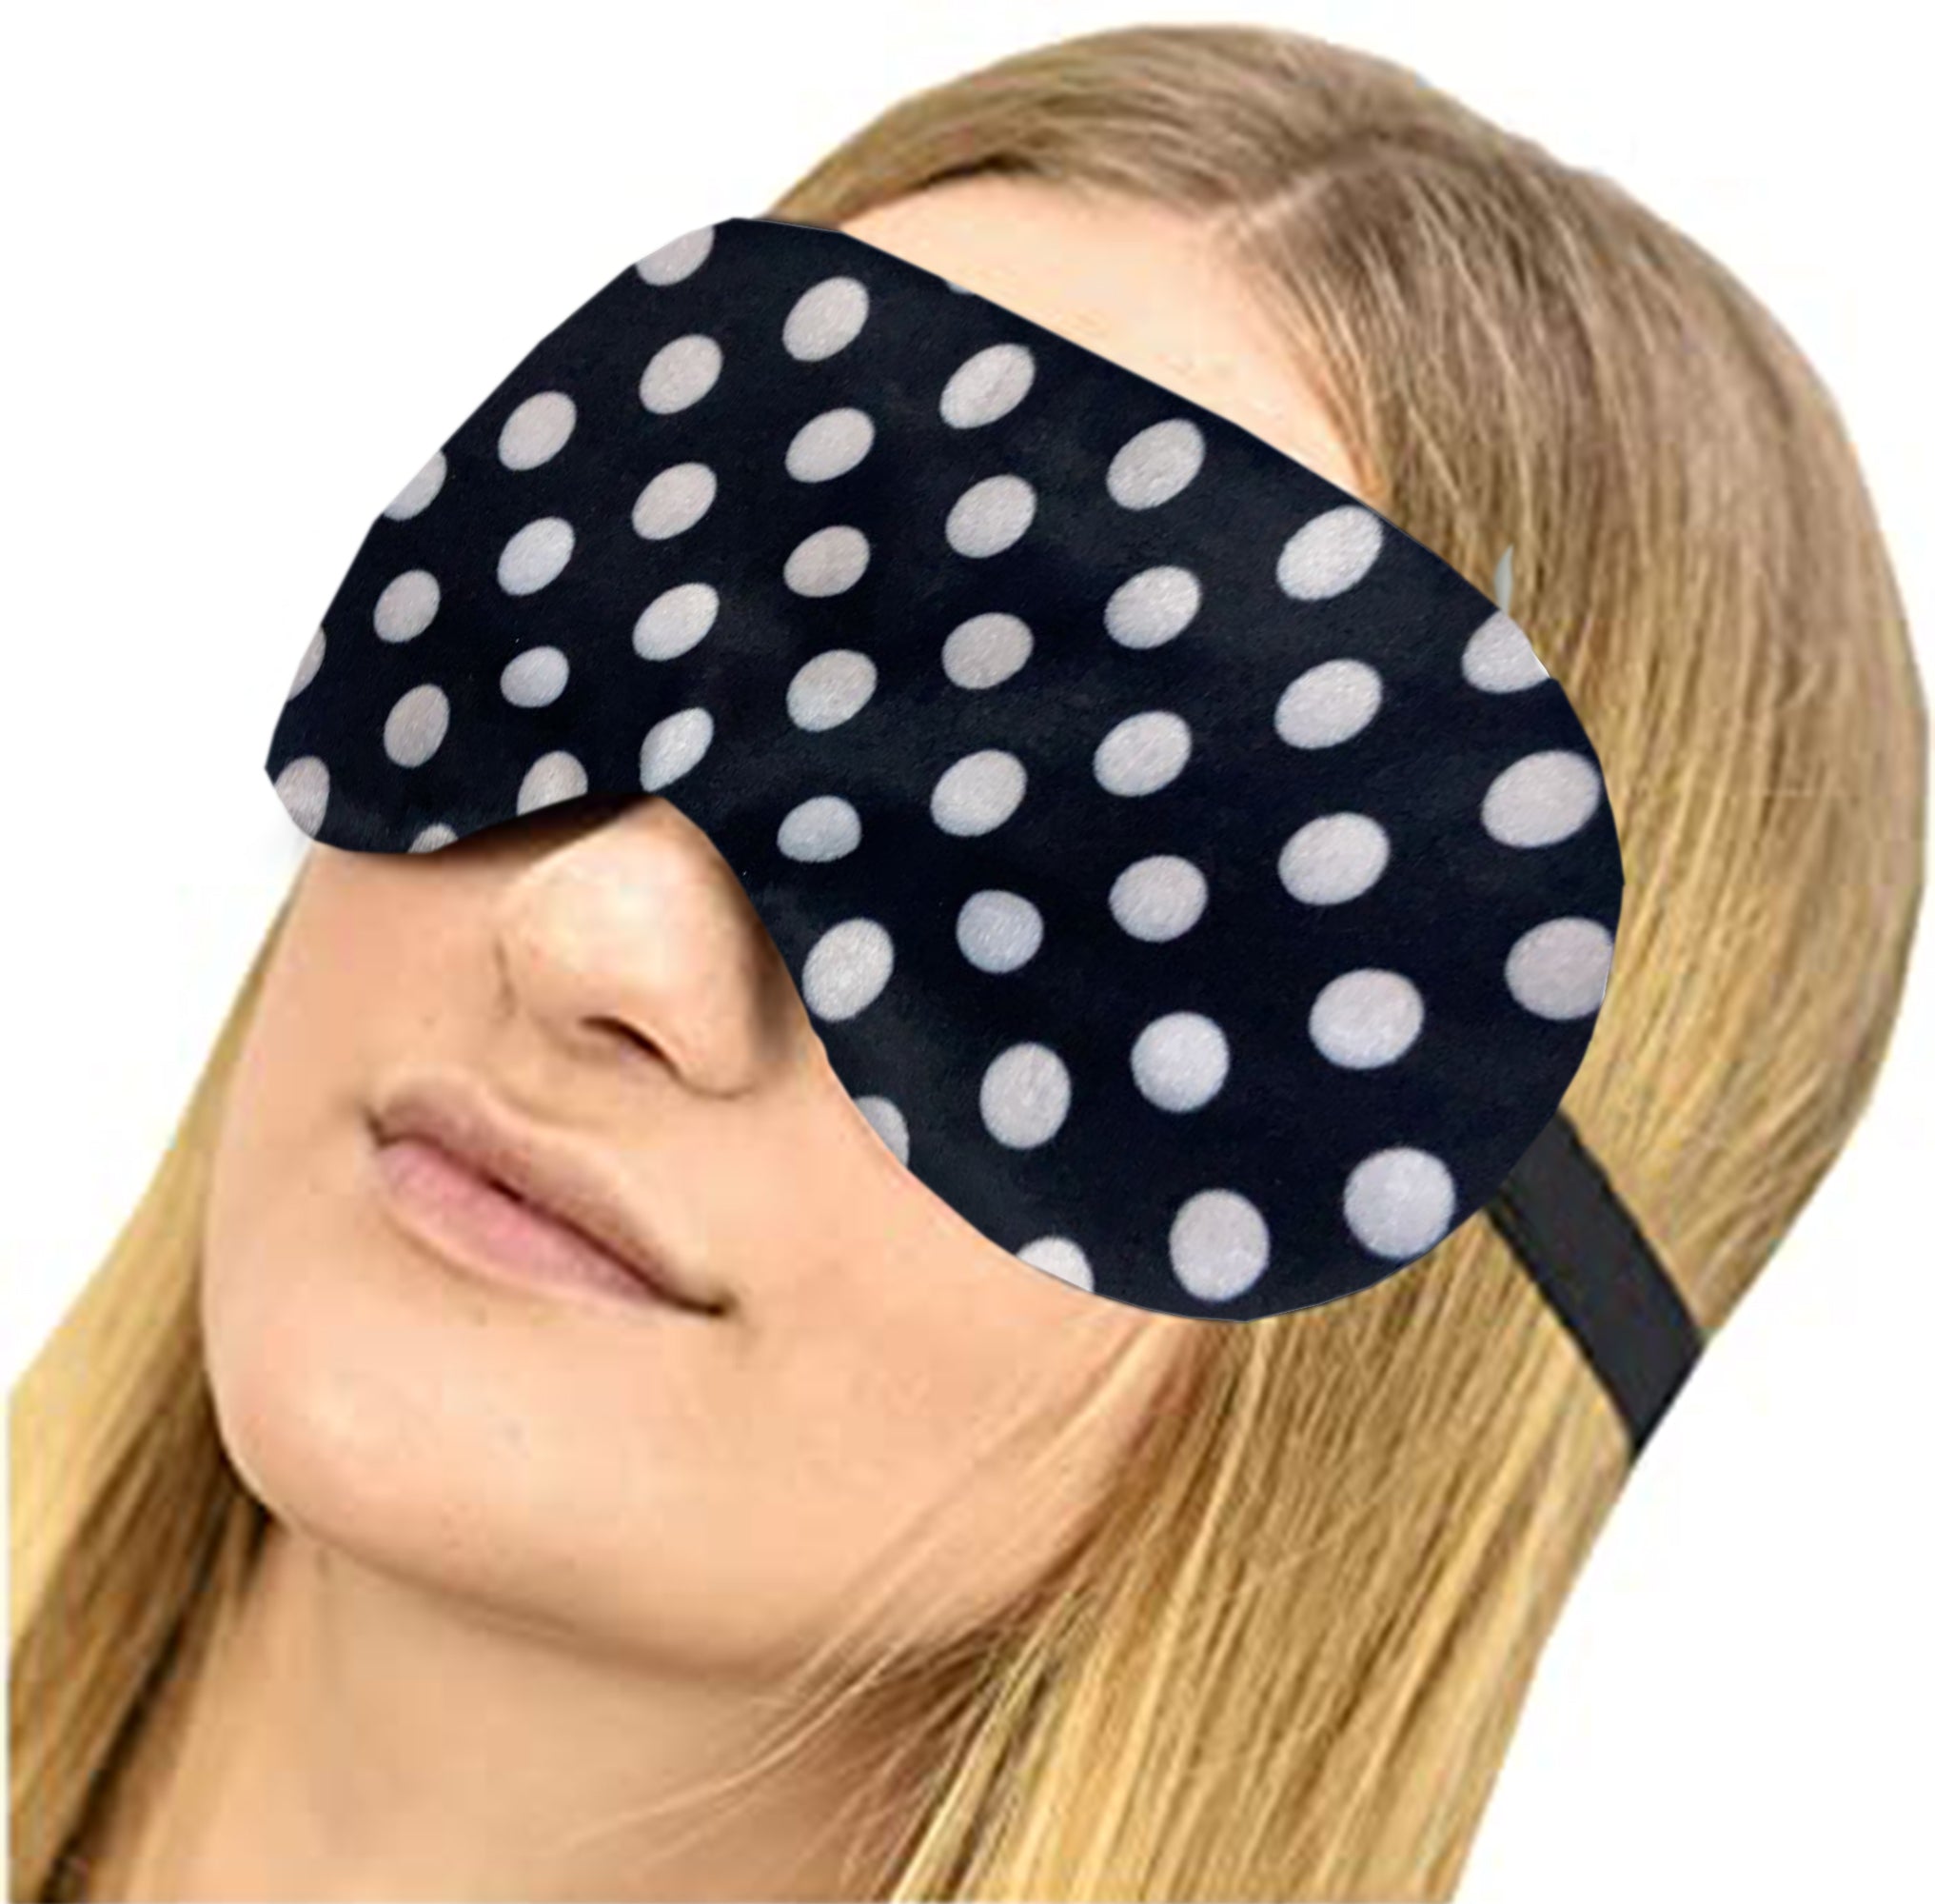 Lushomes Sleep Eyemasks-Single Pc , Black Polka Dot Design, Light Blocking Sleep Mask, Soft and Comfortable Night Eye Mask for Men Women, Eye Blinder for Travel/Sleeping/Shift Work (Pack of 1),